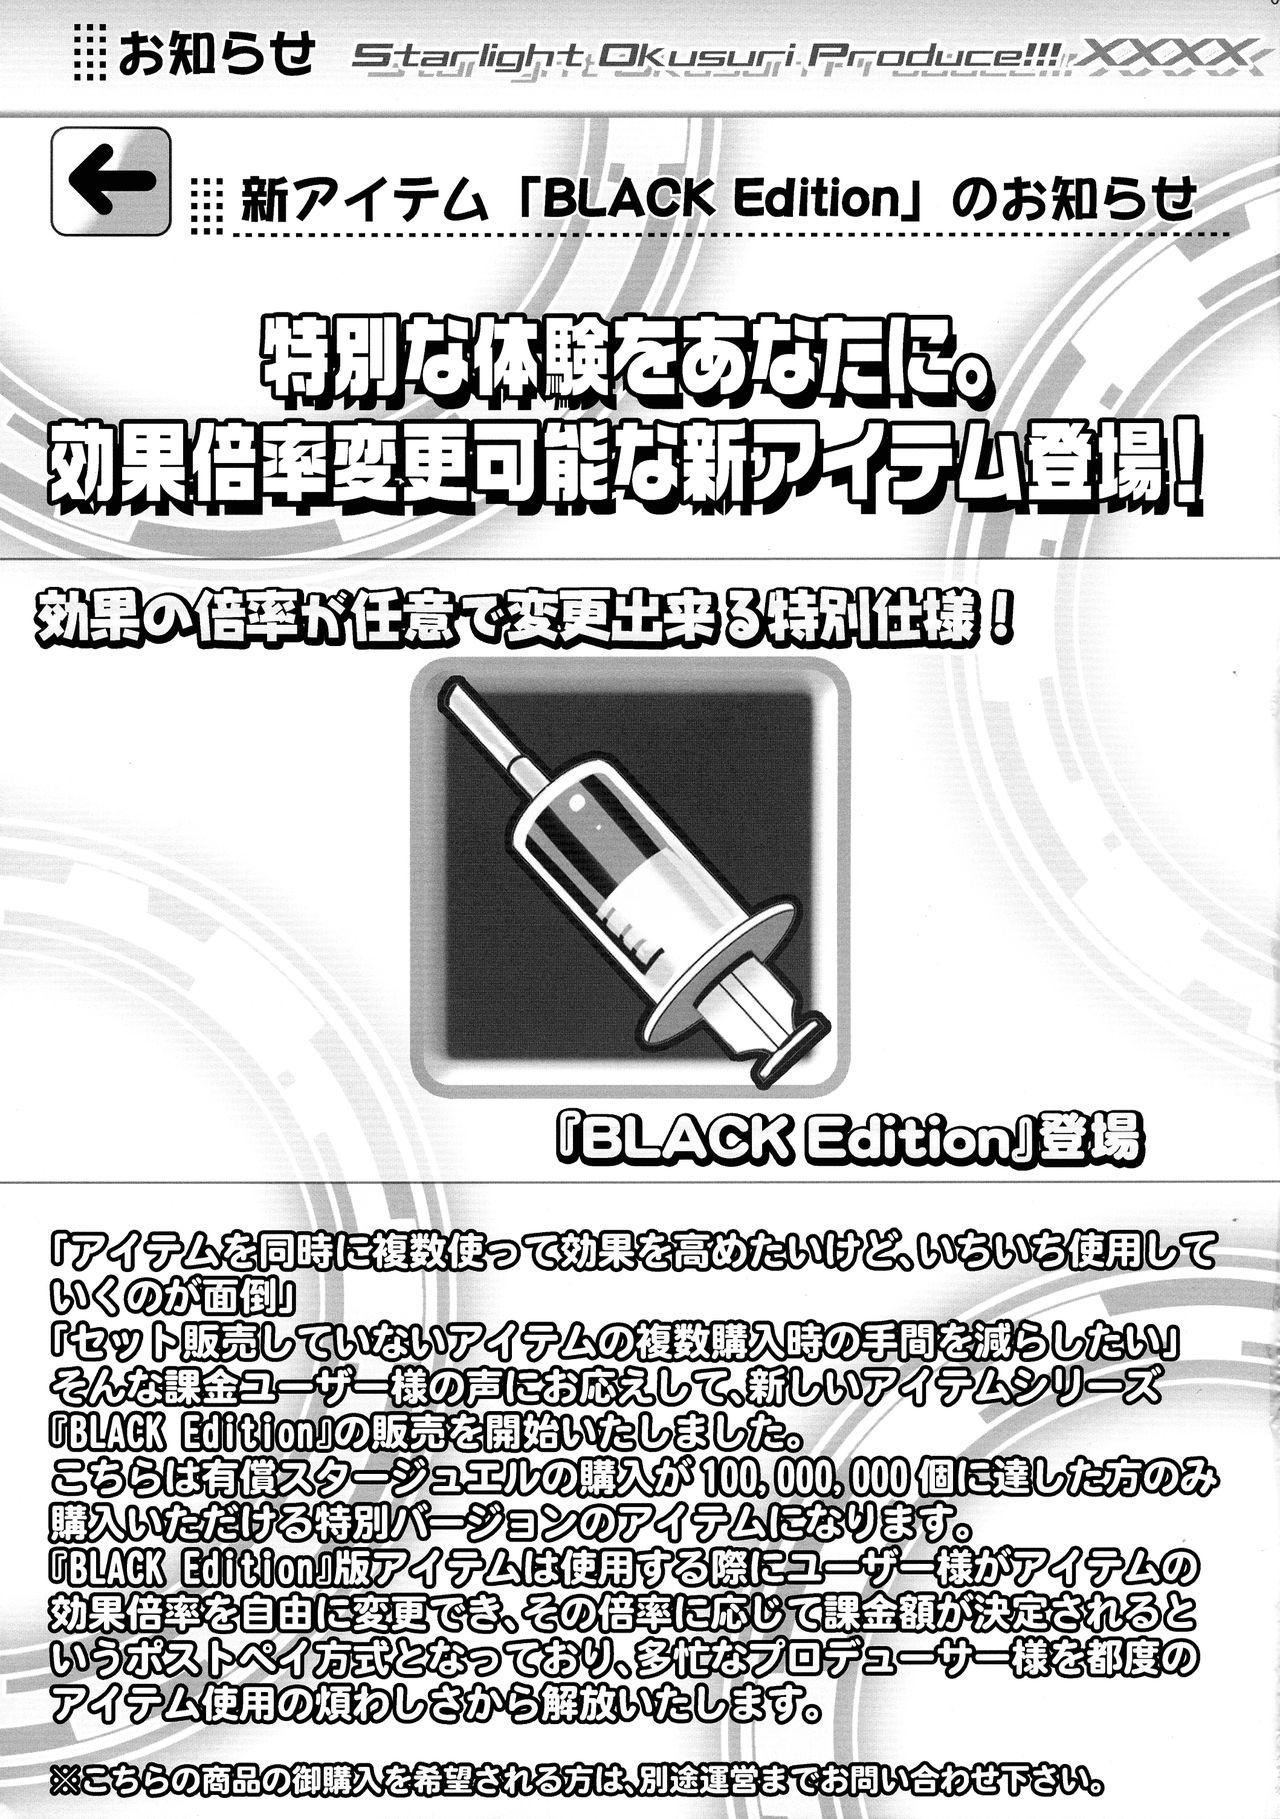 Caliente Starlight Okusuri Produce!!! XXXX - The idolmaster Coroa - Page 5